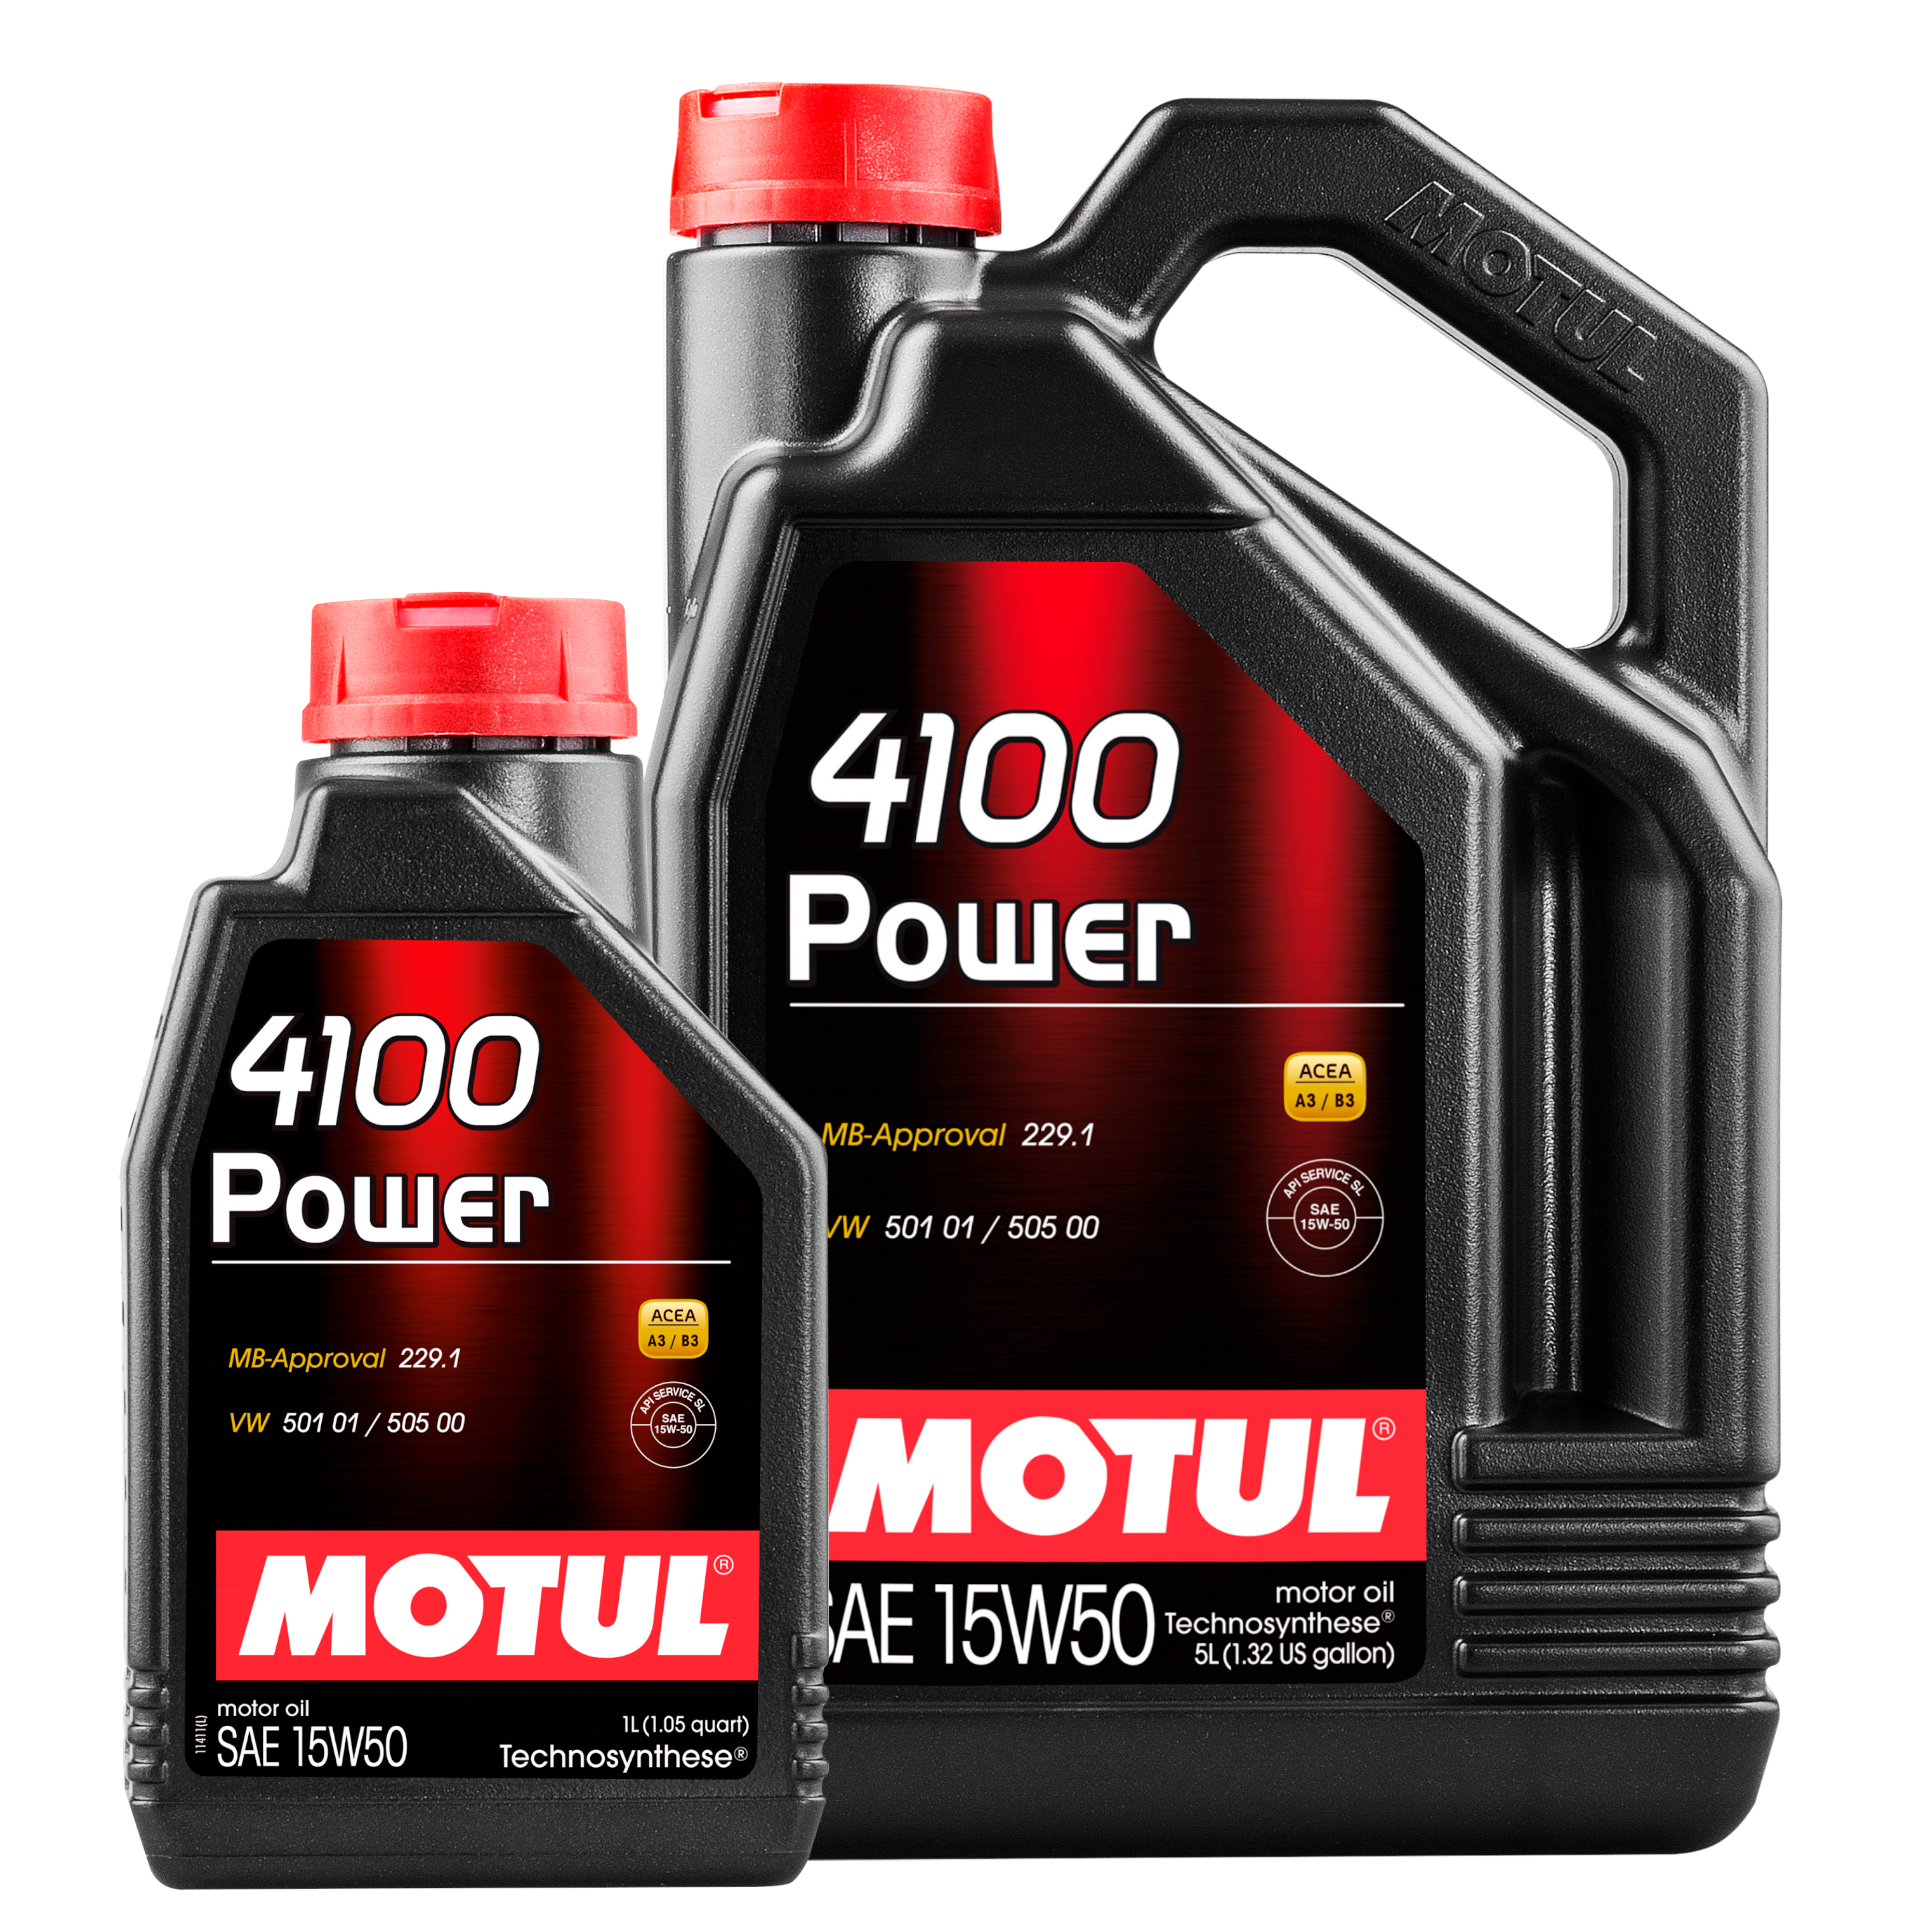 MOTUL PKW 4100 Power 15W-50 Ganzjahresöl reduziert Ölverbrauch 5+1 Liter